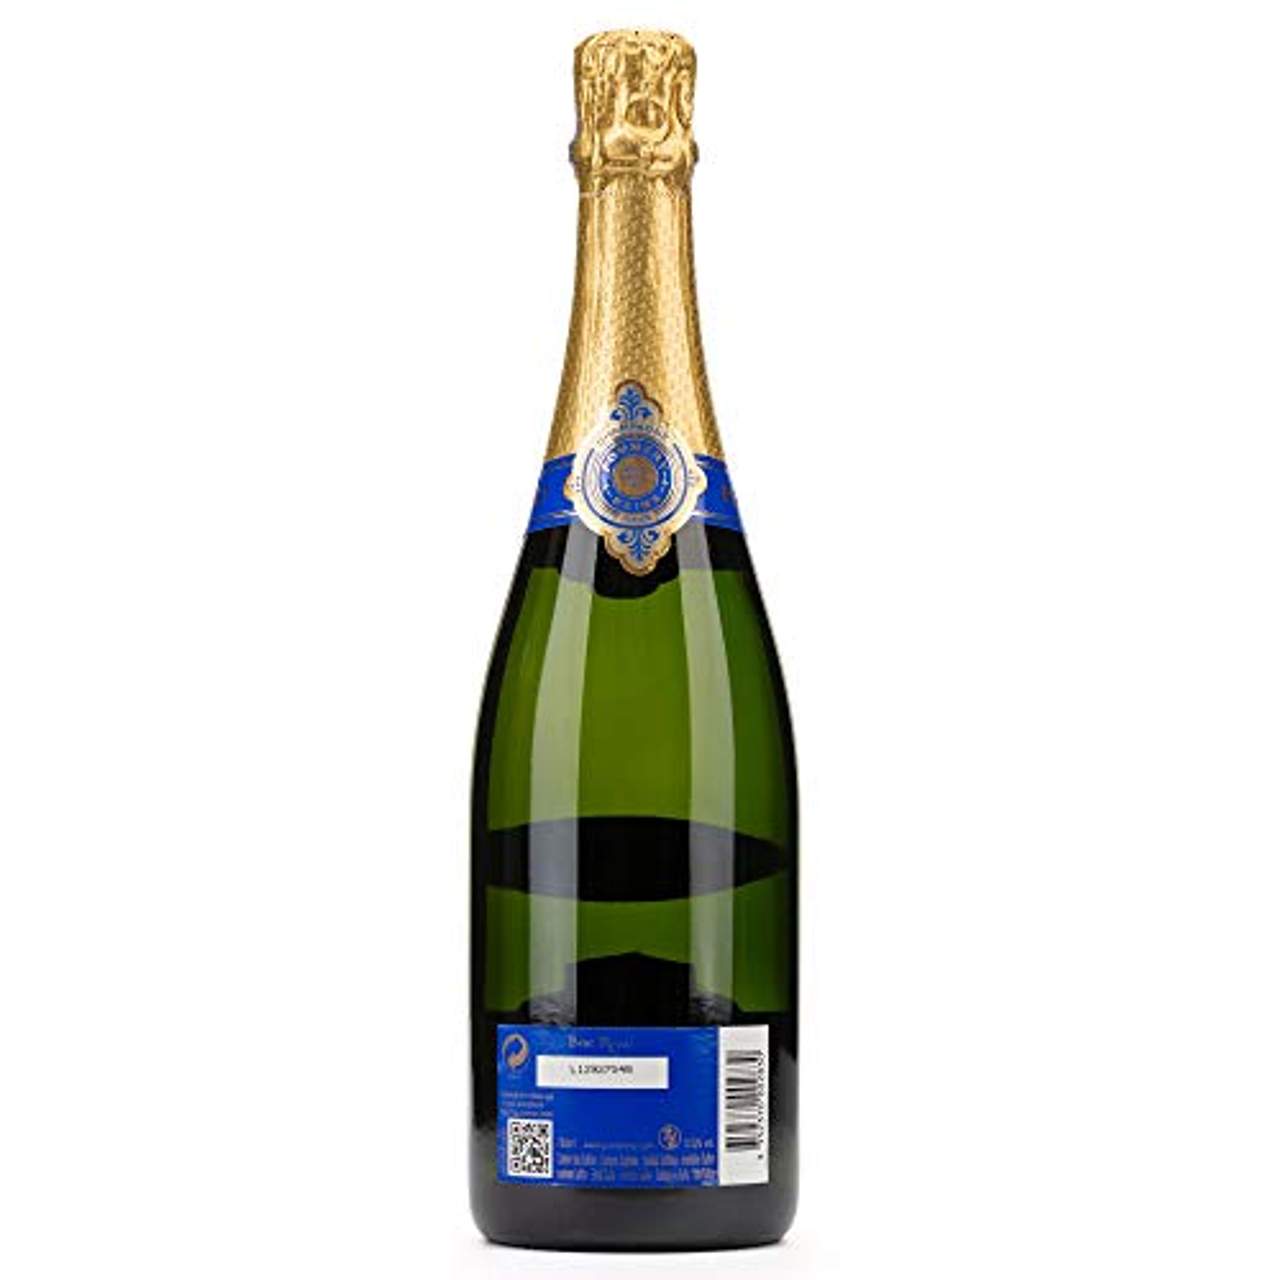 Pommery Brut Royal Champagner